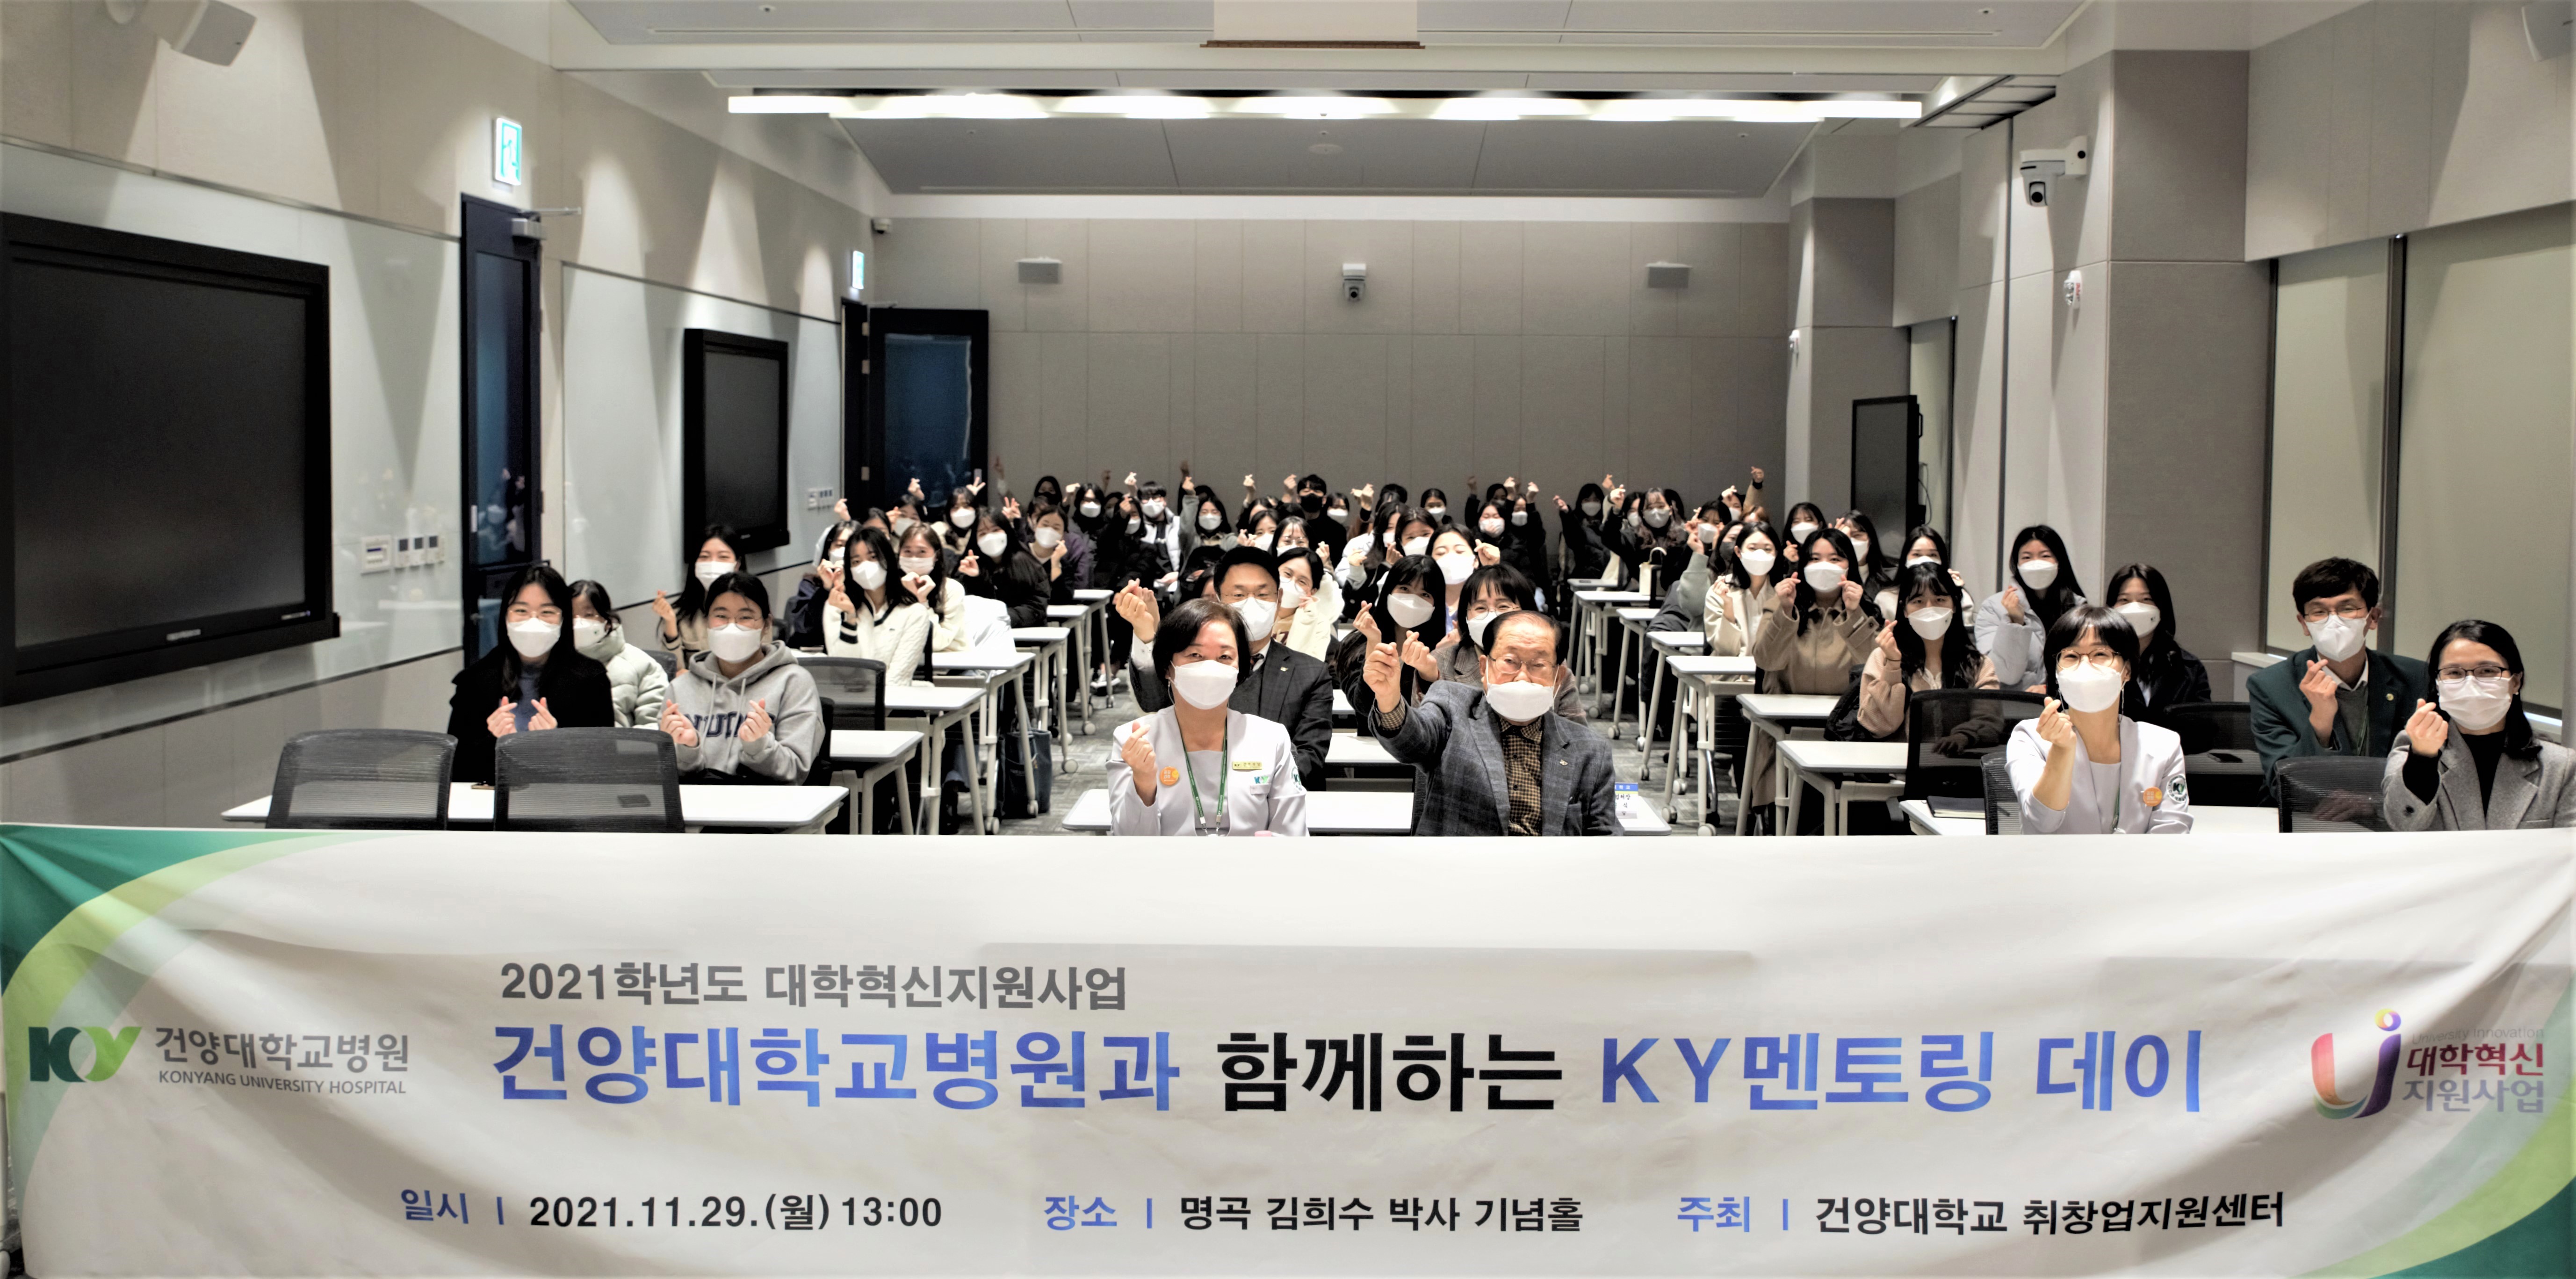 건양대 취창업지원센터, 건양대병원 취업예정자를 위한 ‘KY 멘토링데이’ 개최